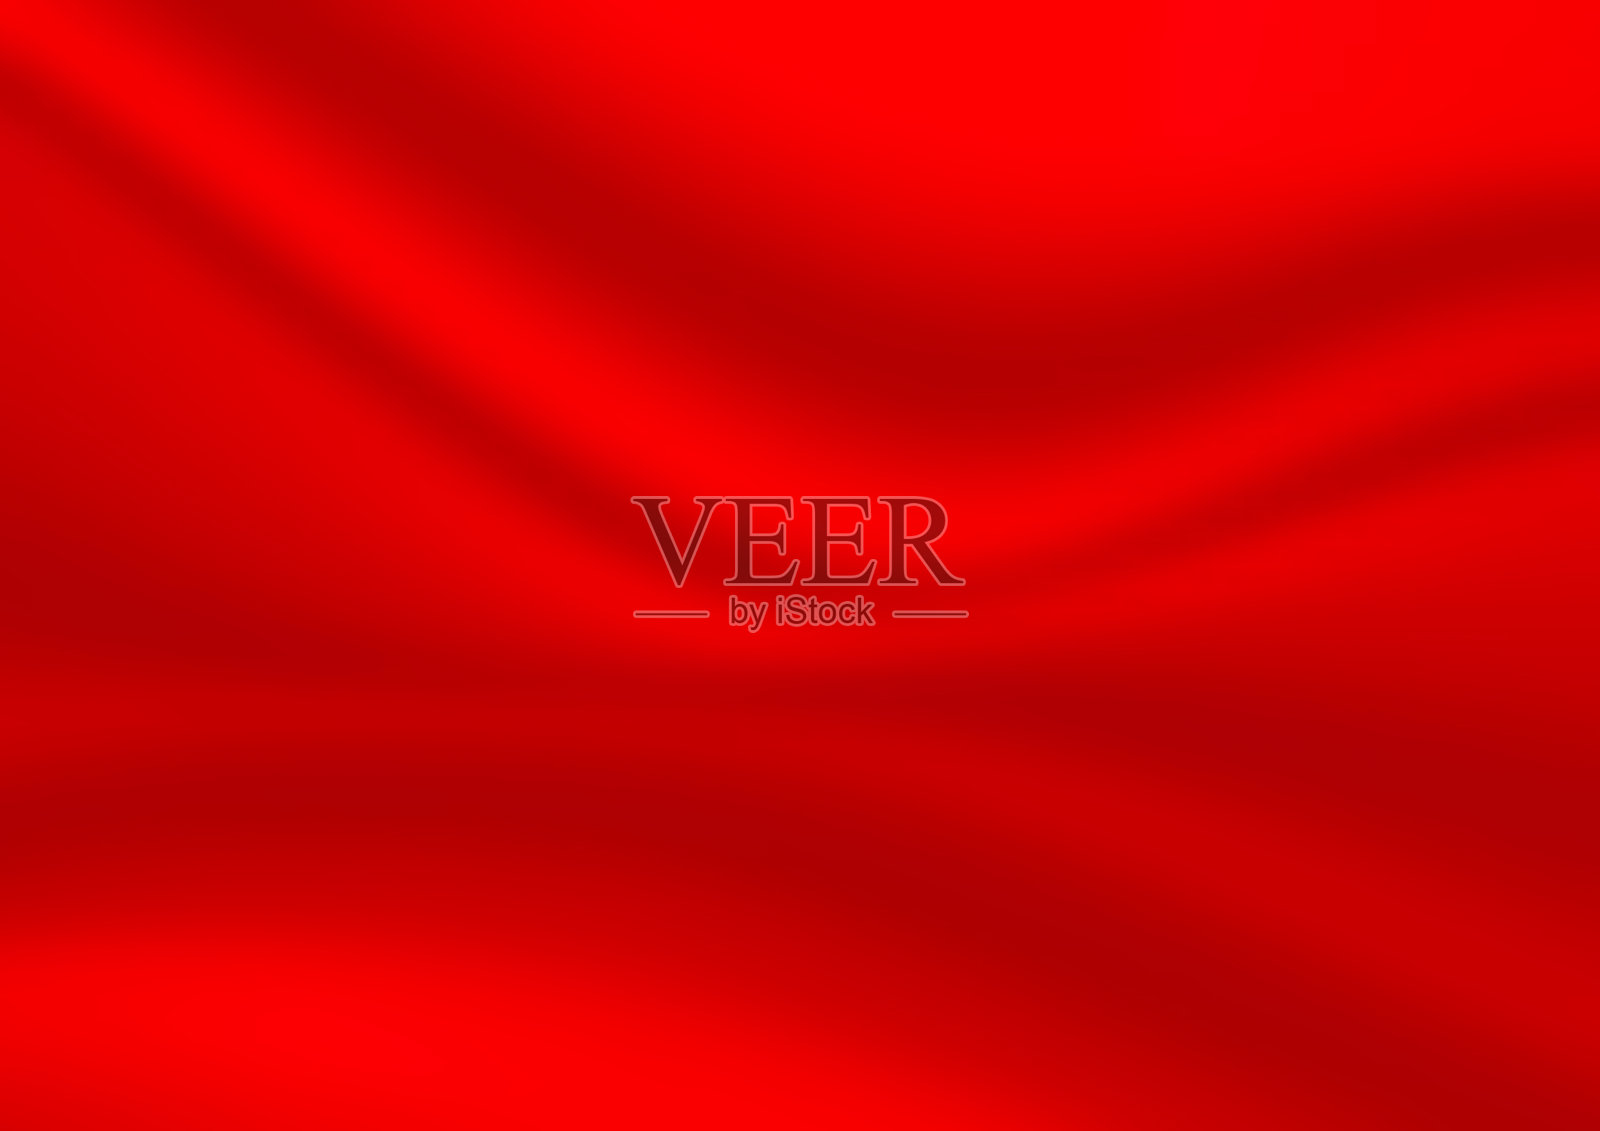 抽象的红色背景。缎纹豪华布料质地。光滑优雅的丝绸插画图片素材